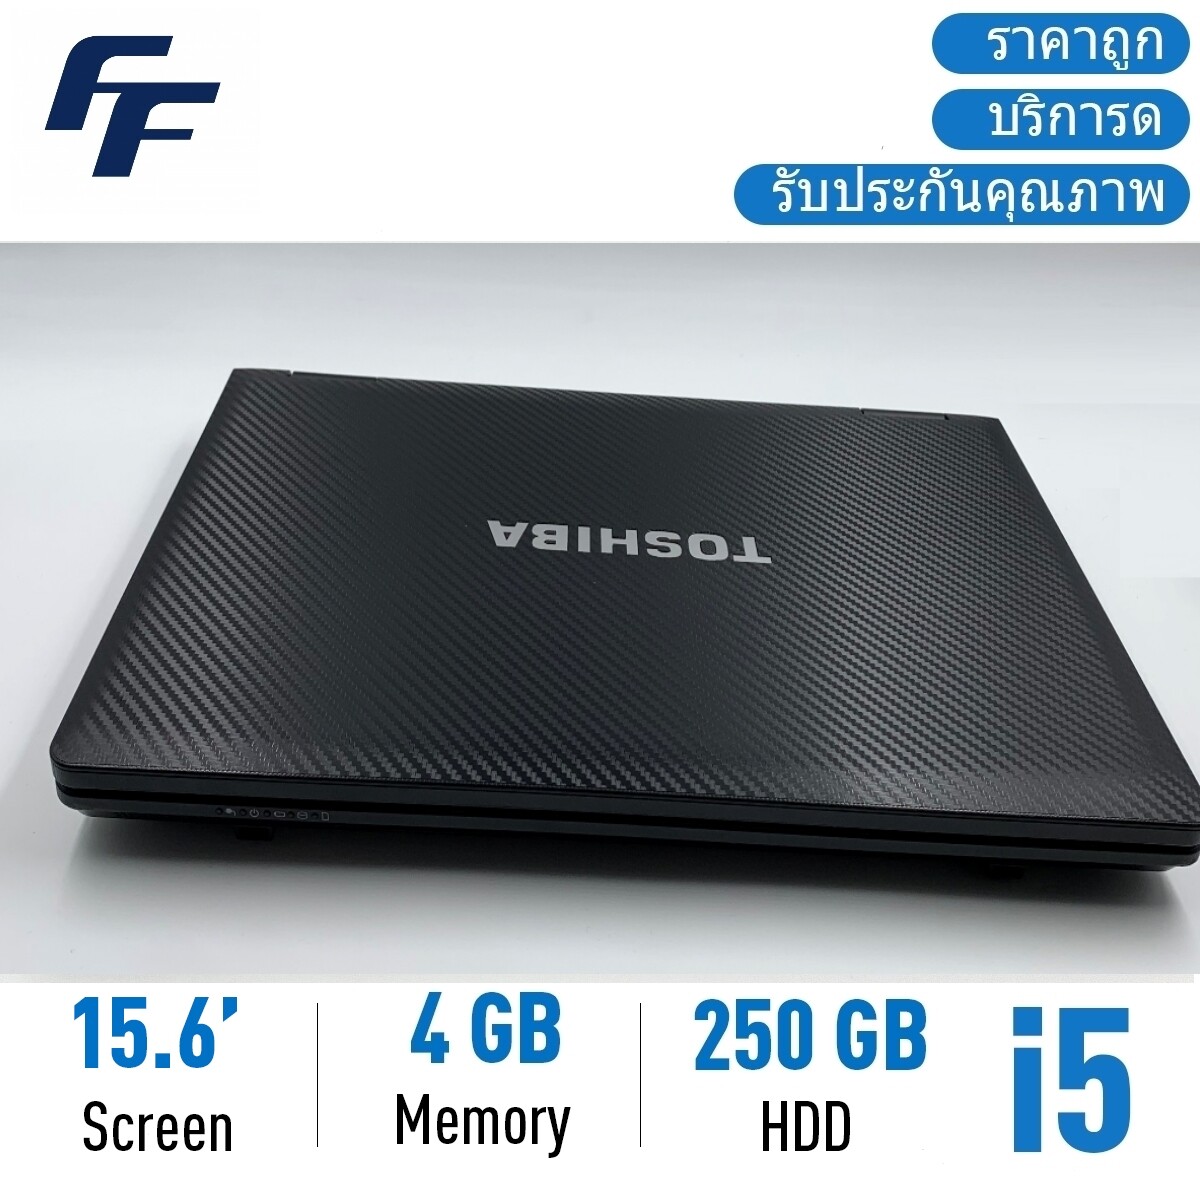 โน๊ตบุ๊คมือสอง Toshiba S500 i5 15.6นิ้ว Notebook ราคาถูกๆ โน๊ตบุ๊ค laptop มือสอง โน็ตบุ๊คมือ2 โน้ตบุ๊คถูกๆ โน๊ตบุ๊คมือสอง2 โน๊ตบุ๊คมือสอง i3/i5/i7